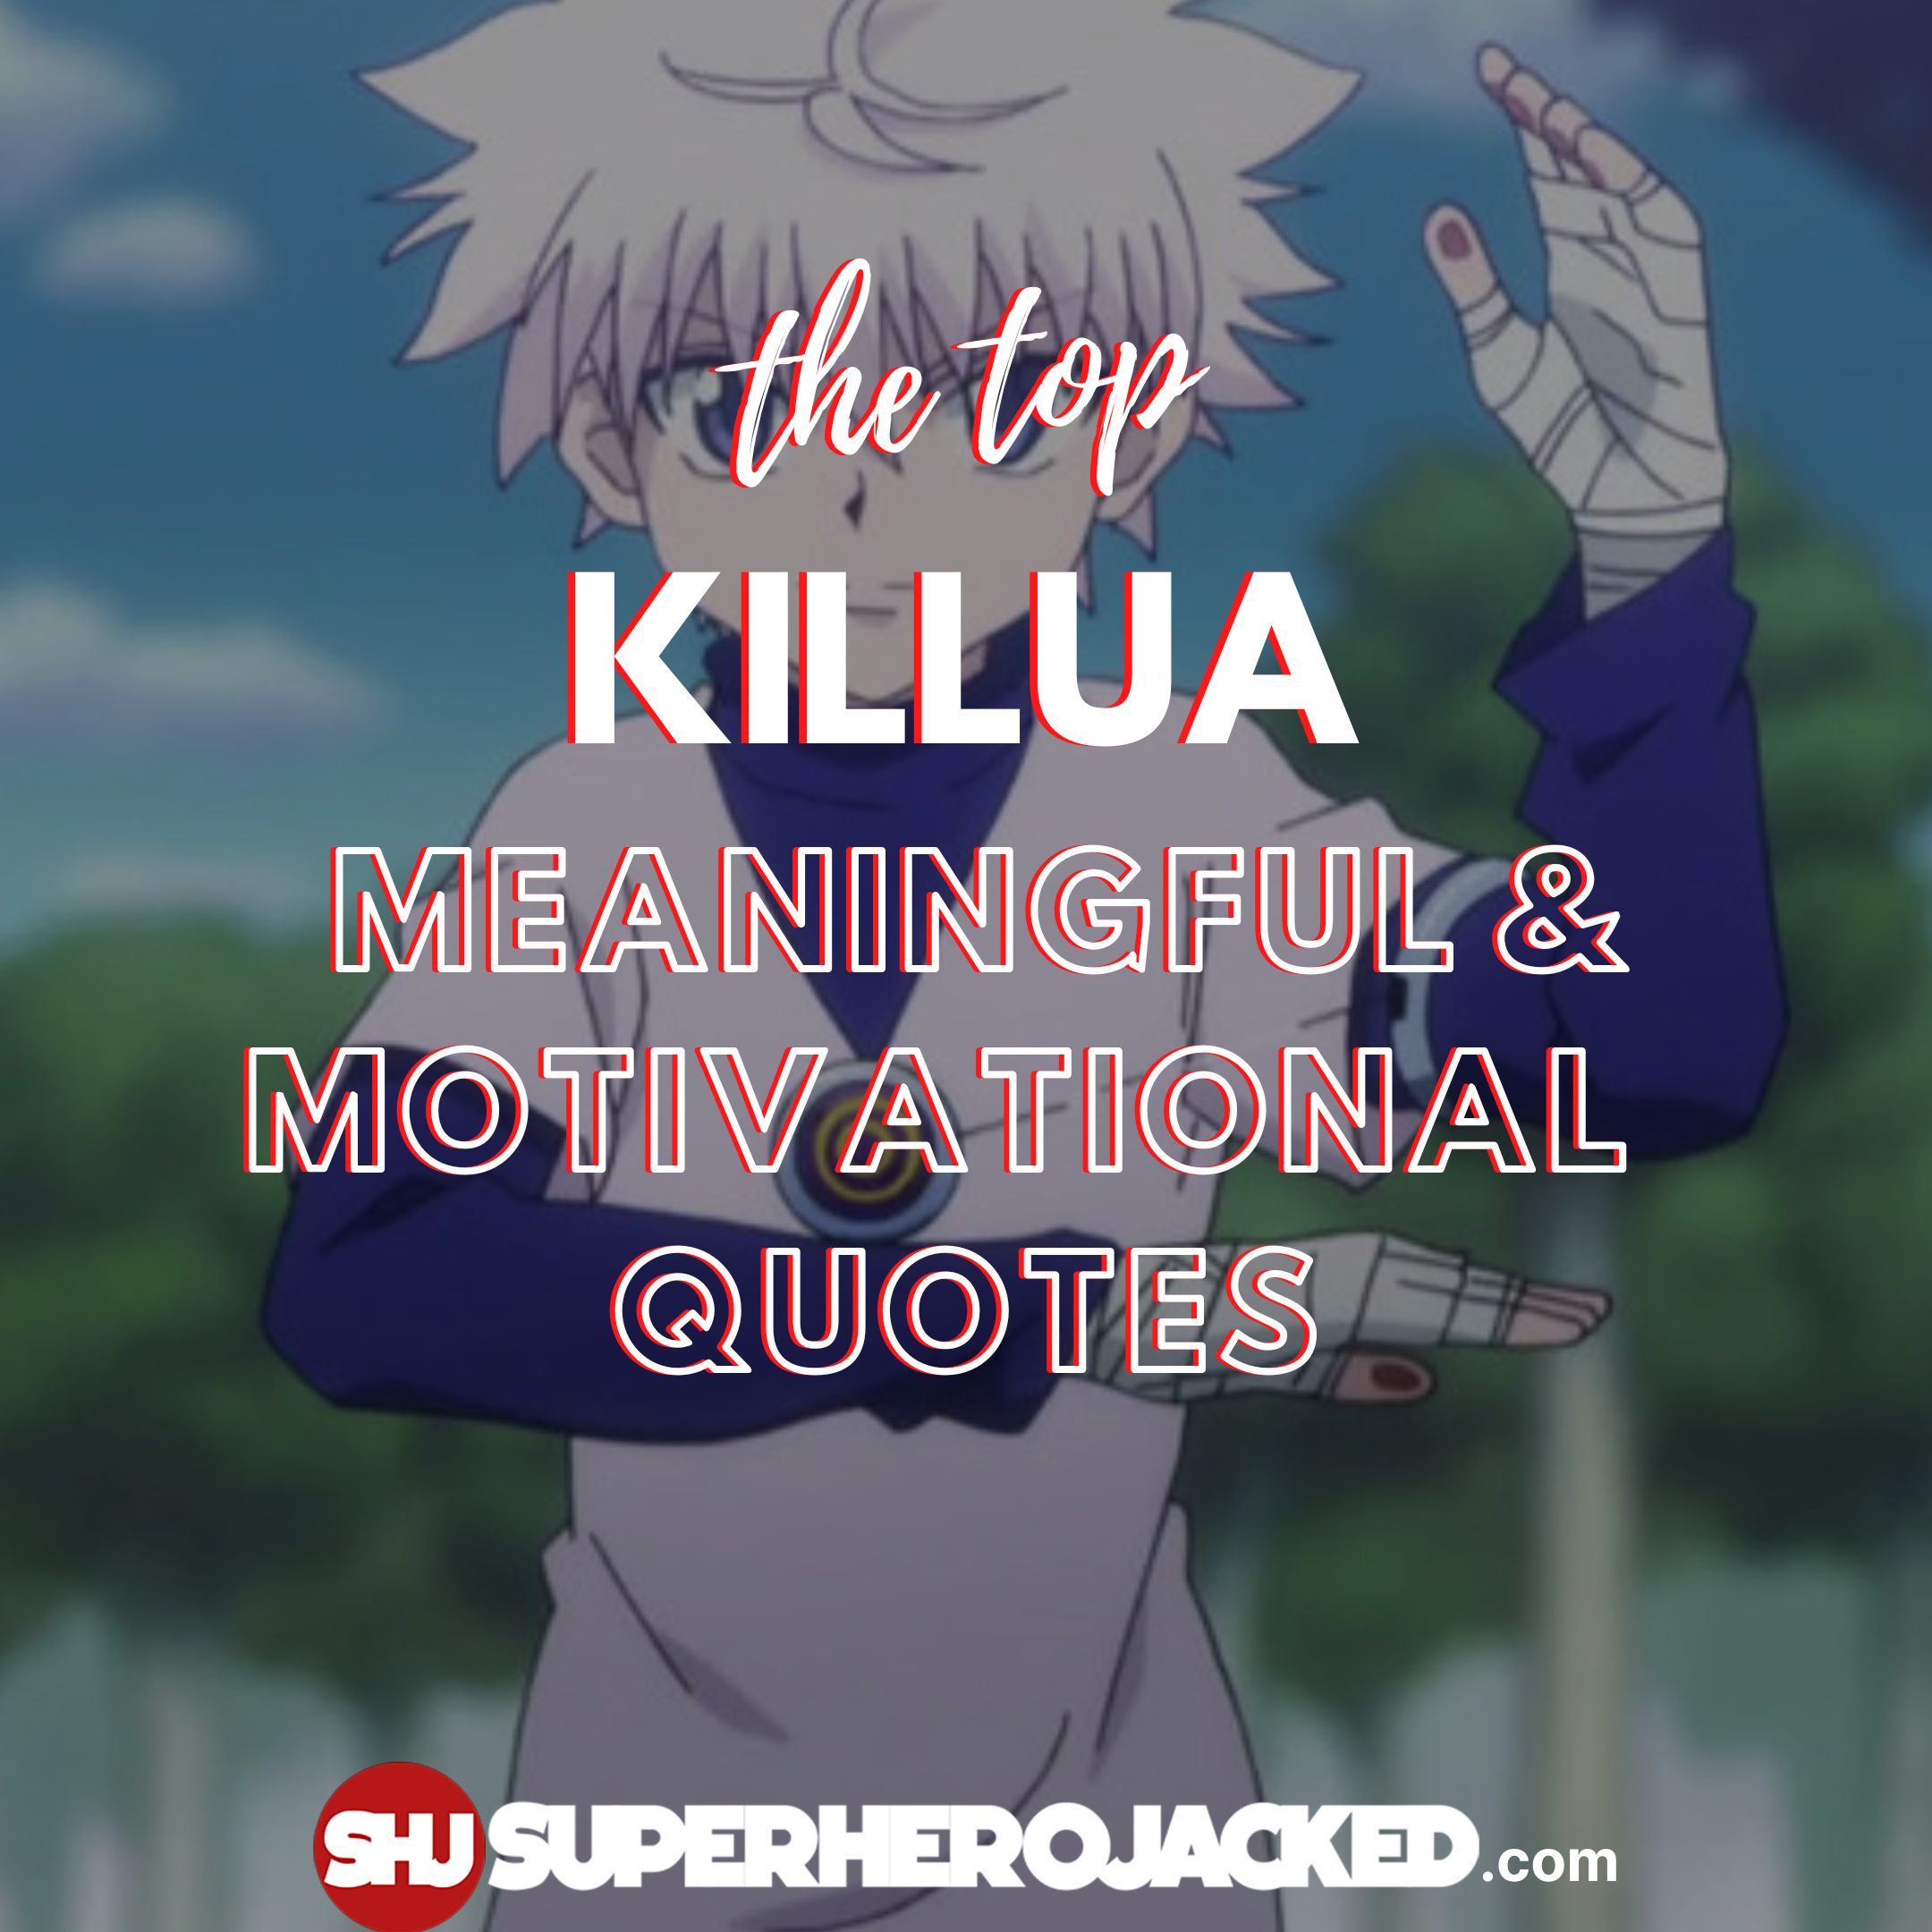 Top Ten Killua Quotes: Most Meaningful Killua Quotes!